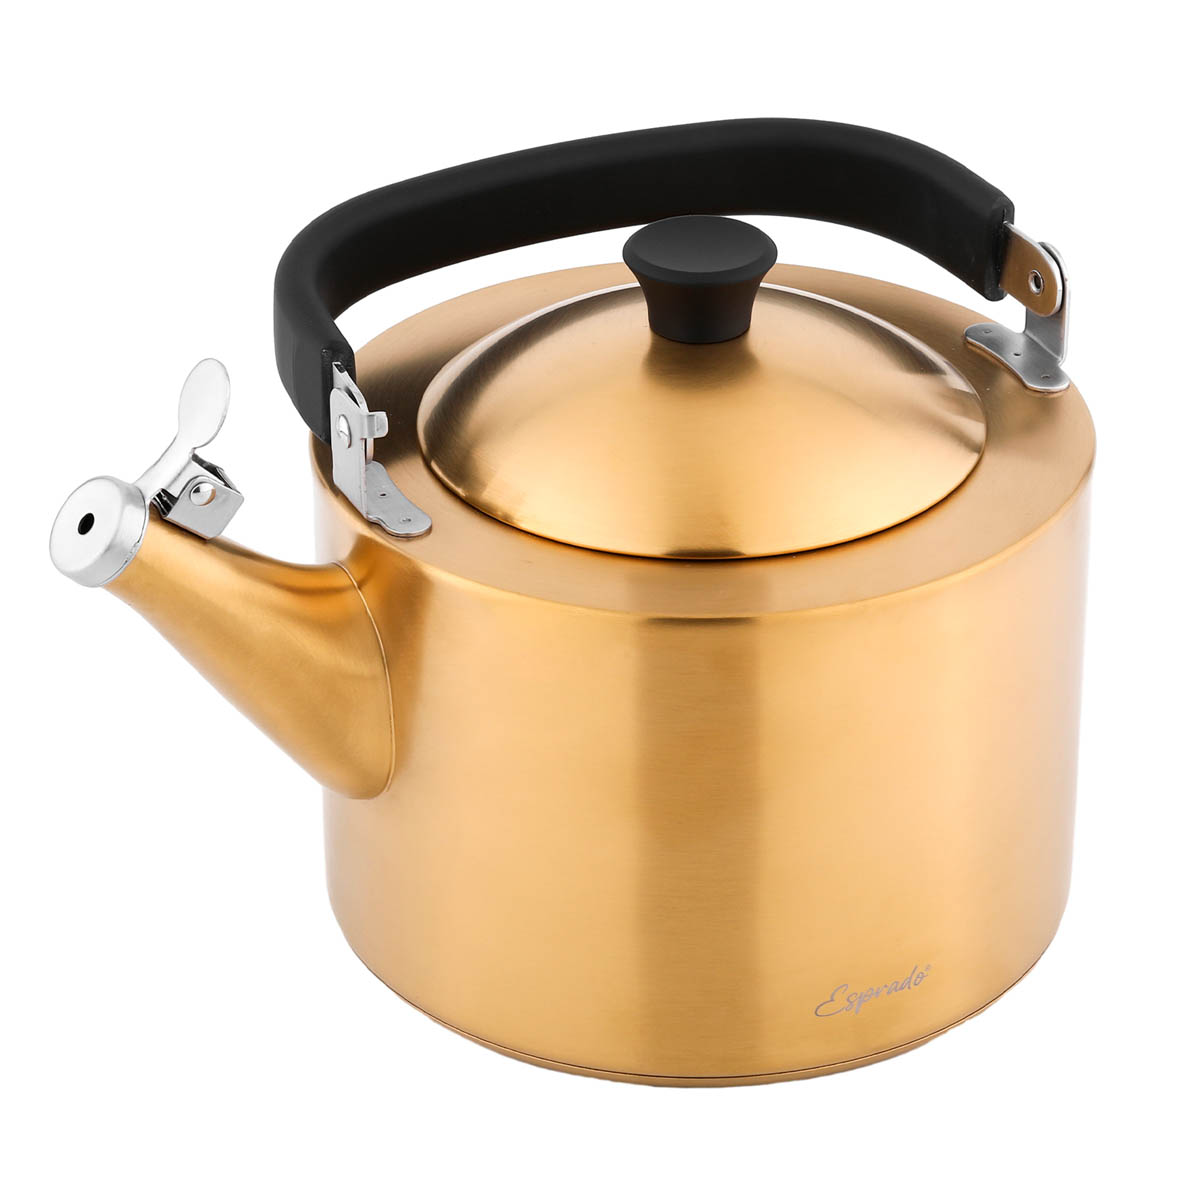 Чайник наплитный со свистком Esprado Magnifico 2,5л, матовый золотой Esprado MGN25G1E109, цвет золотистый